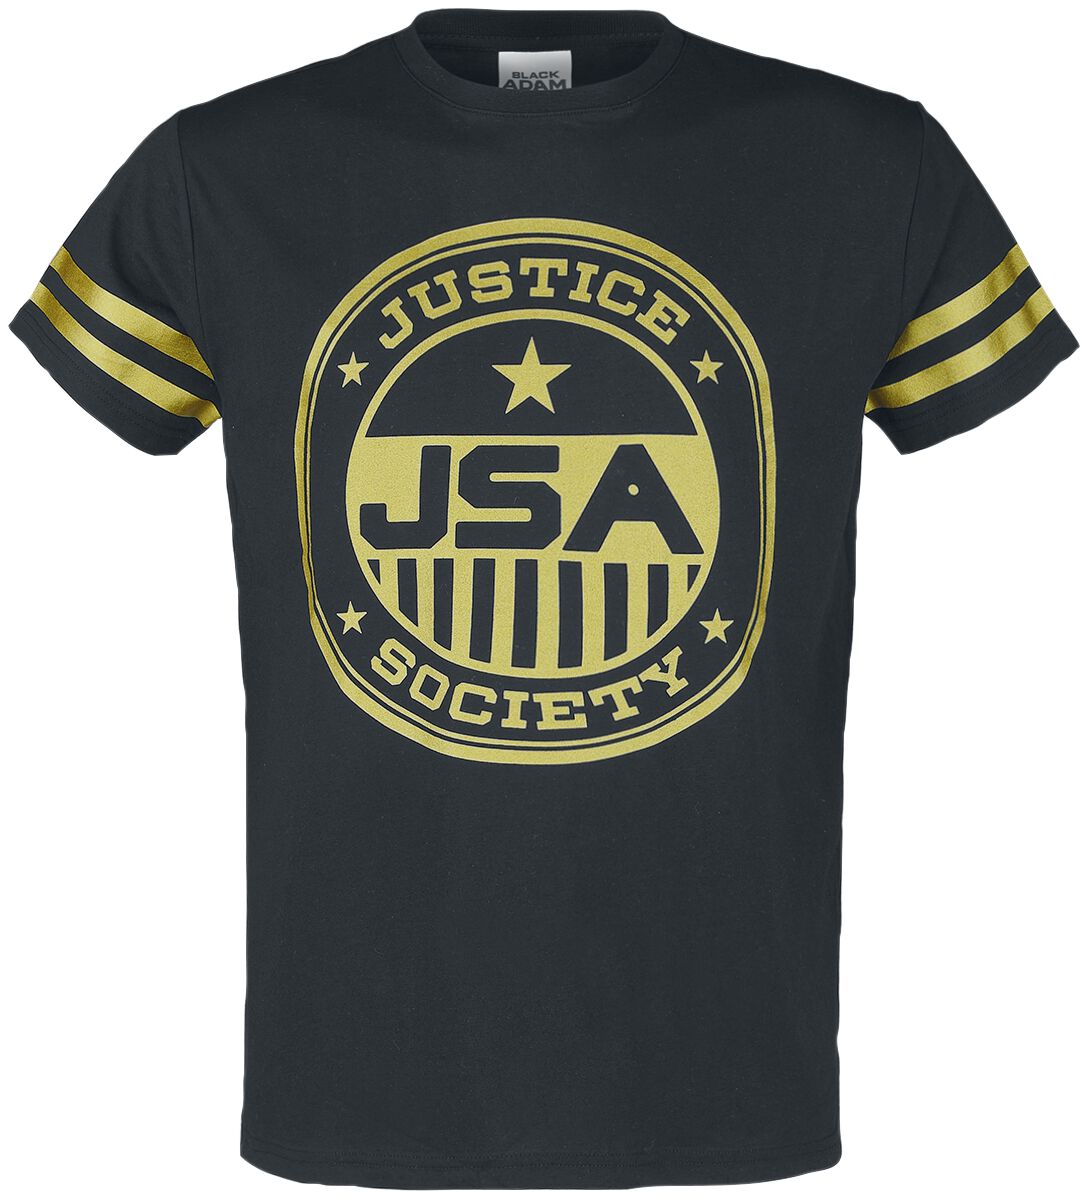 Black Adam - DC Comics T-Shirt - JSA Justice Society - S bis M - für Männer - Größe S - schwarz  - EMP exklusives Merchandise!